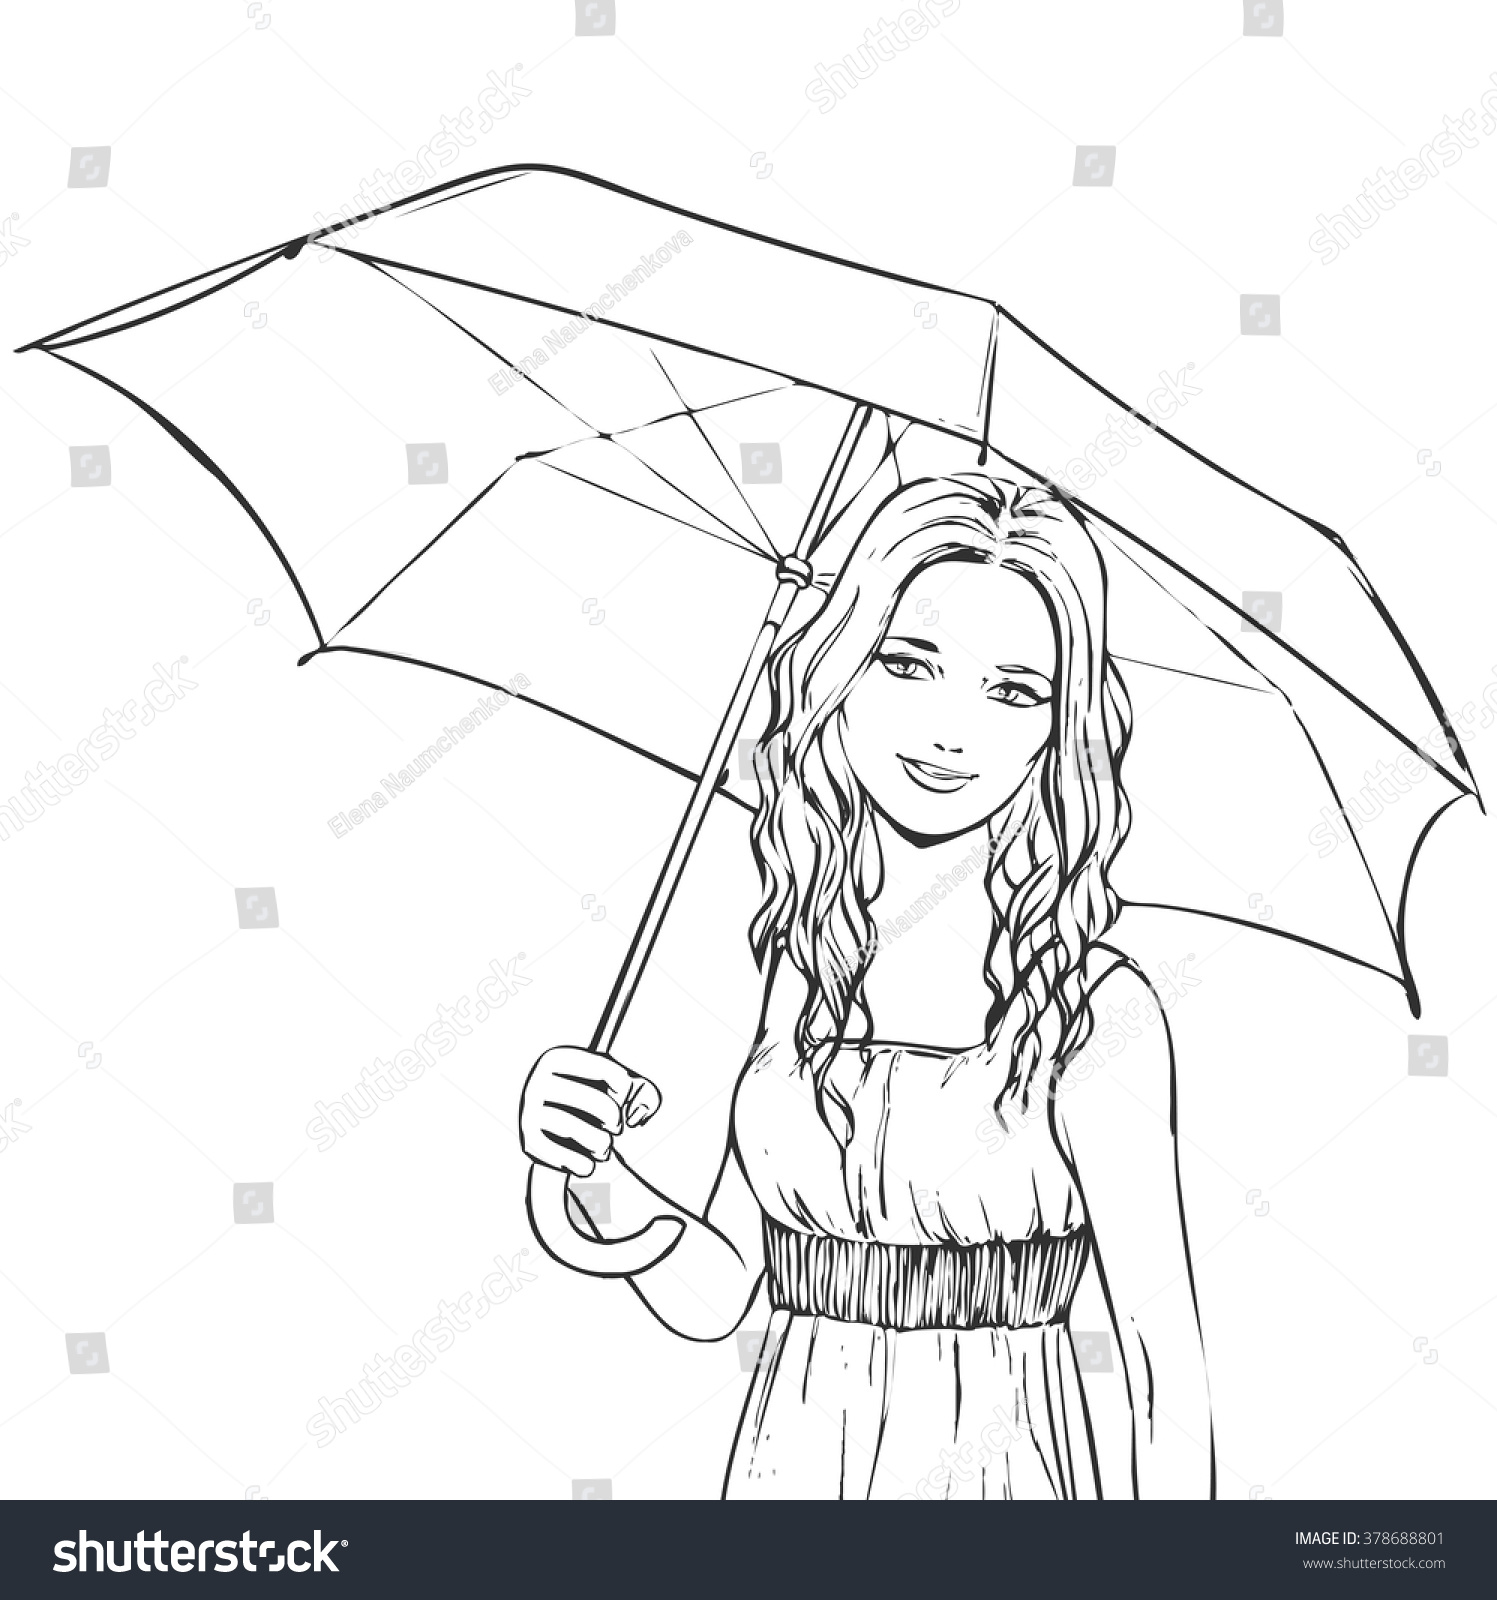 Контурное изображение девочки с зонтом в руках